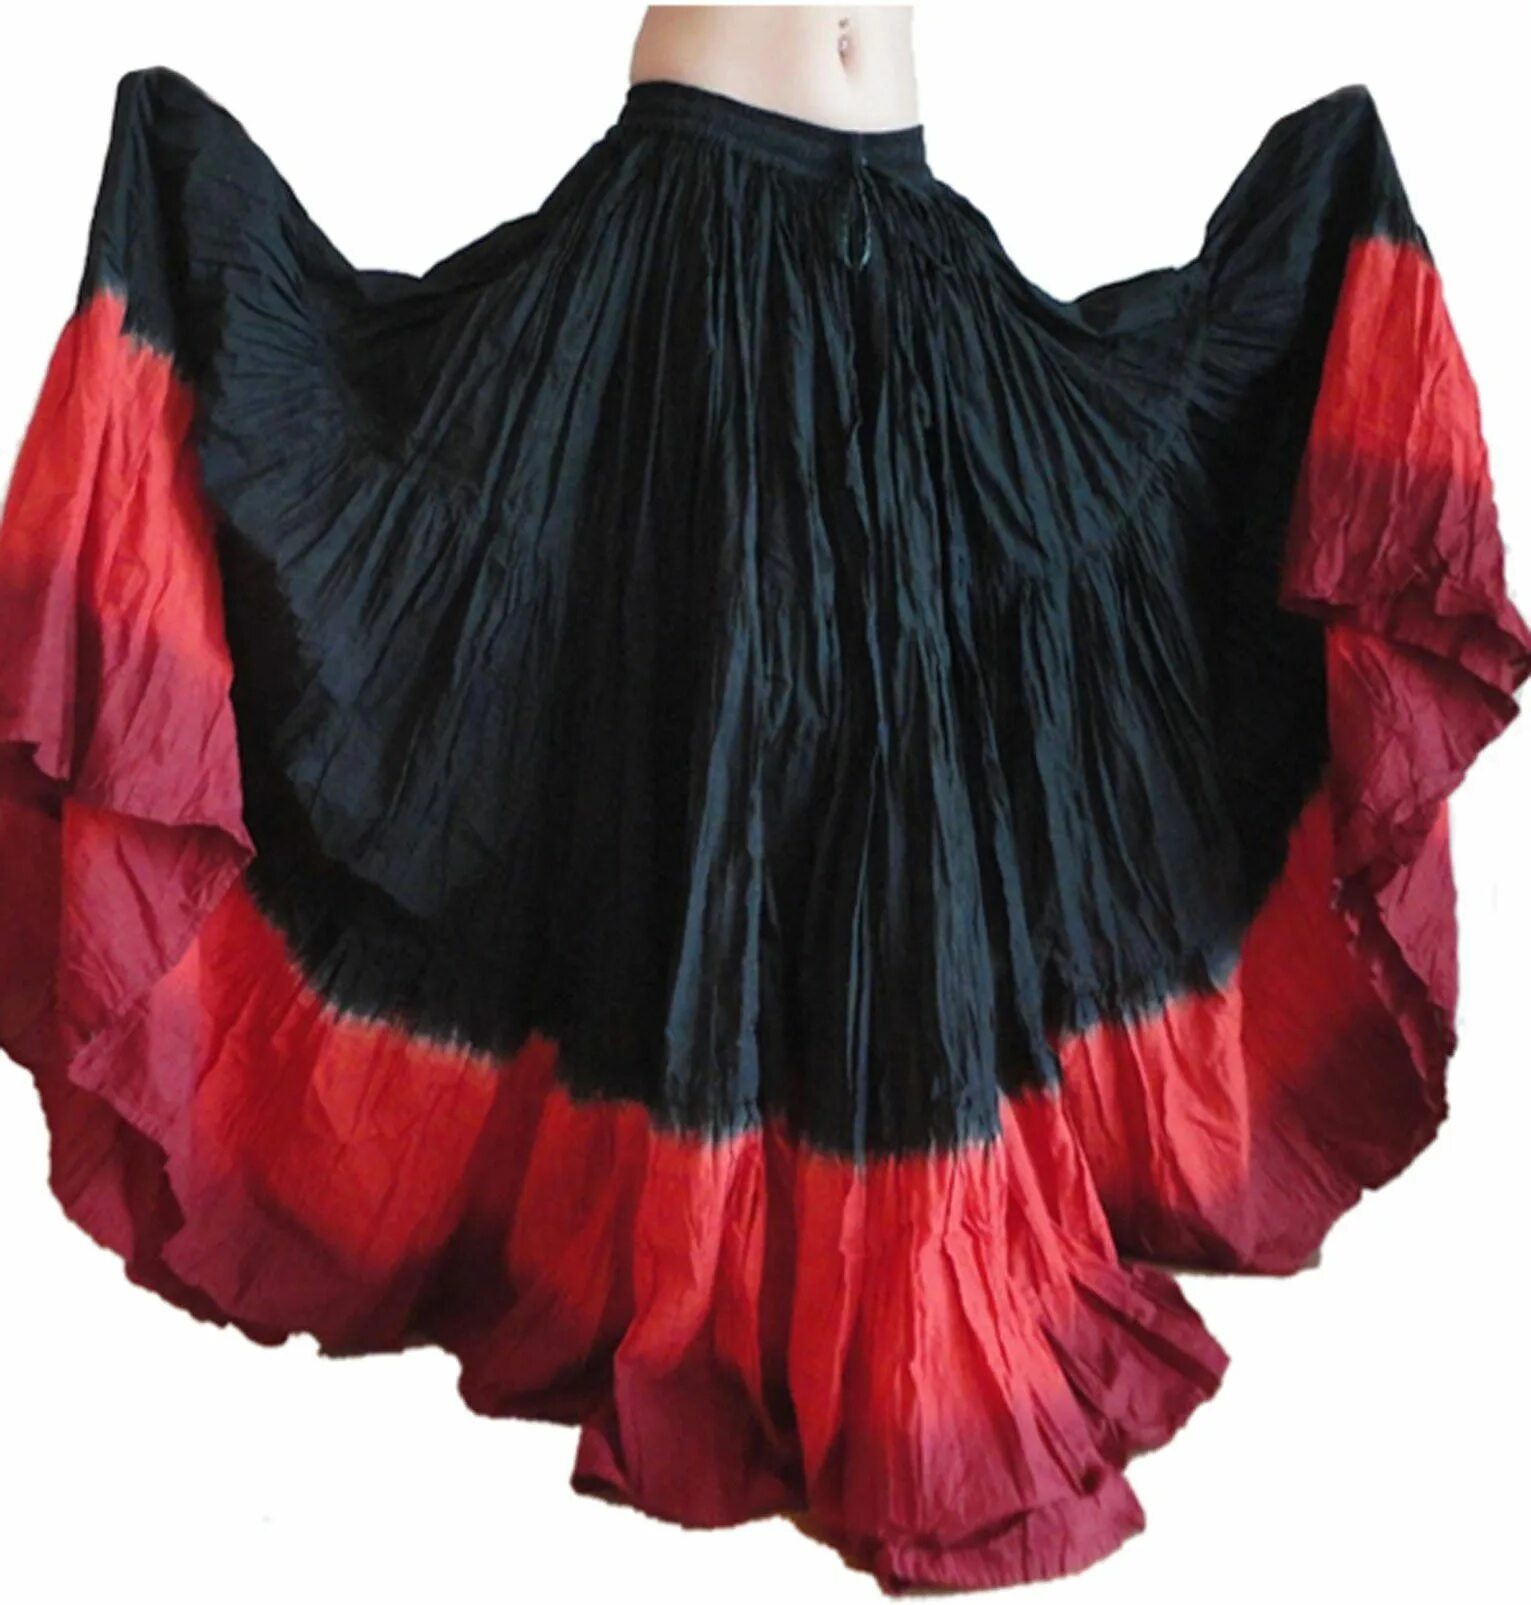 Цыганская юбка. Цыганское платье. Цыганский наряд. Юбка для танцев.